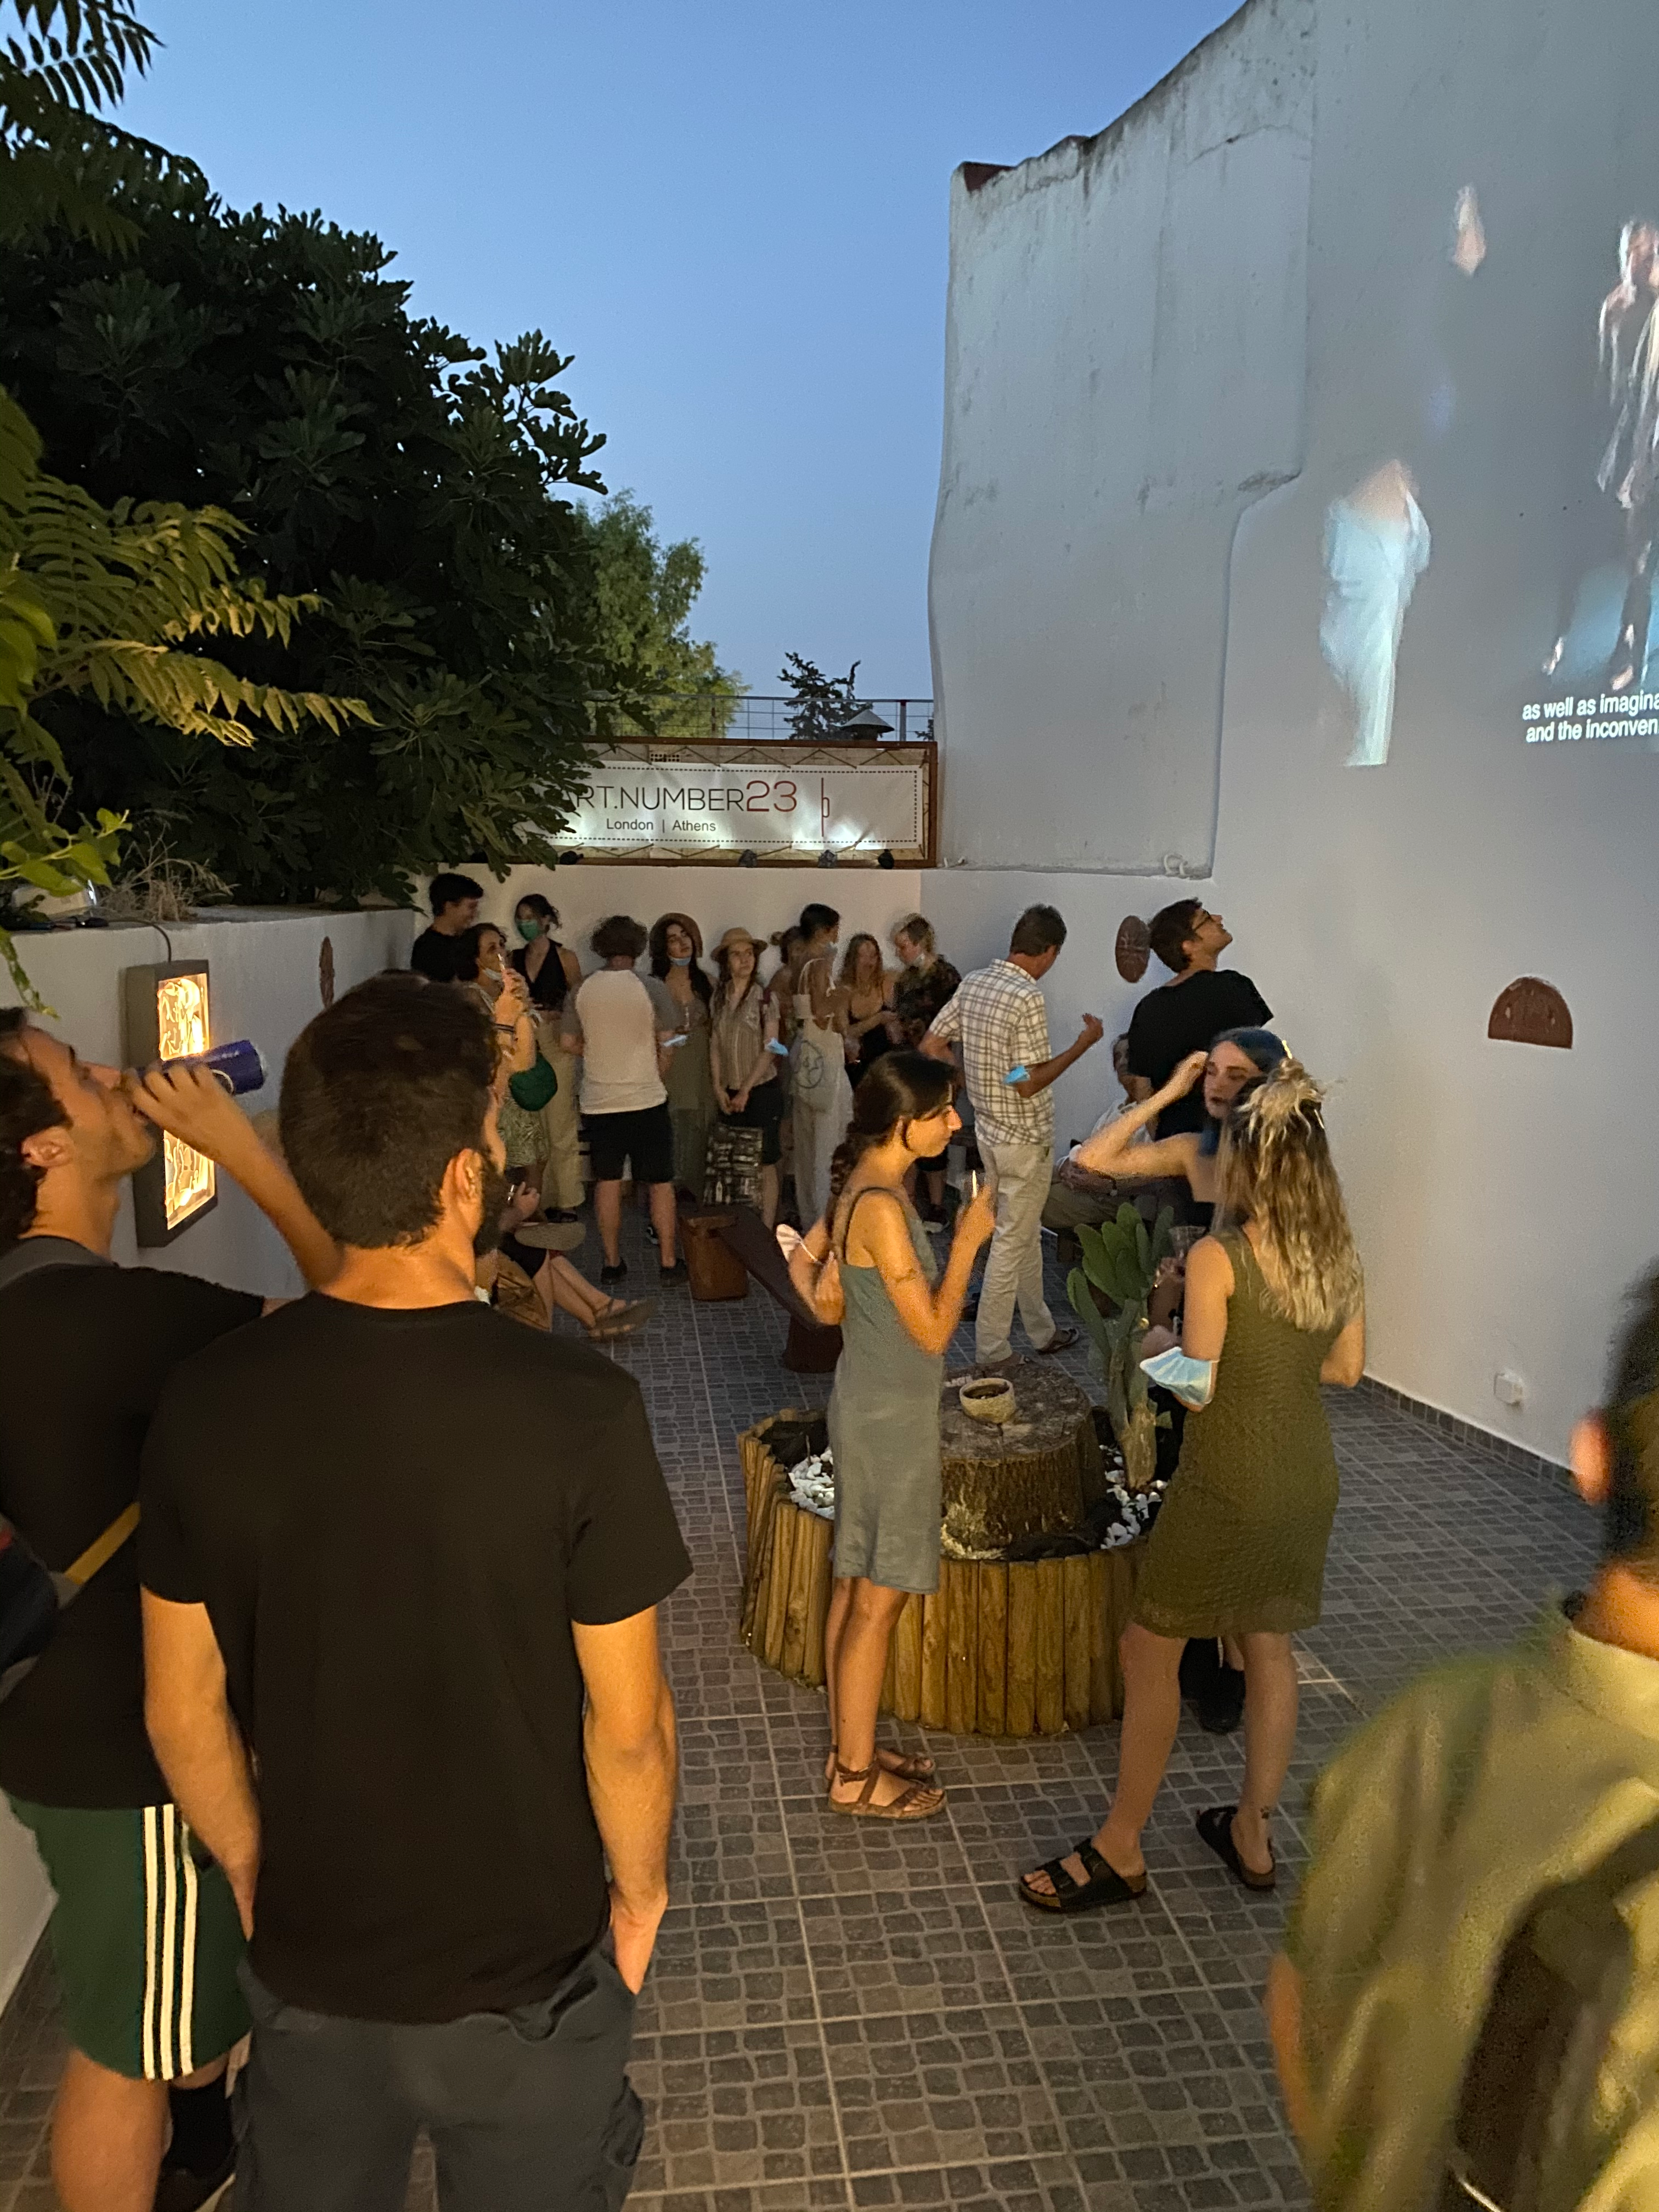 Νέοι καλλιτέχνες παρουσιάζουν κάθε βδομάδα διαφορετικές εκθέσεις τέχνης στο κοινό της Αθήνας